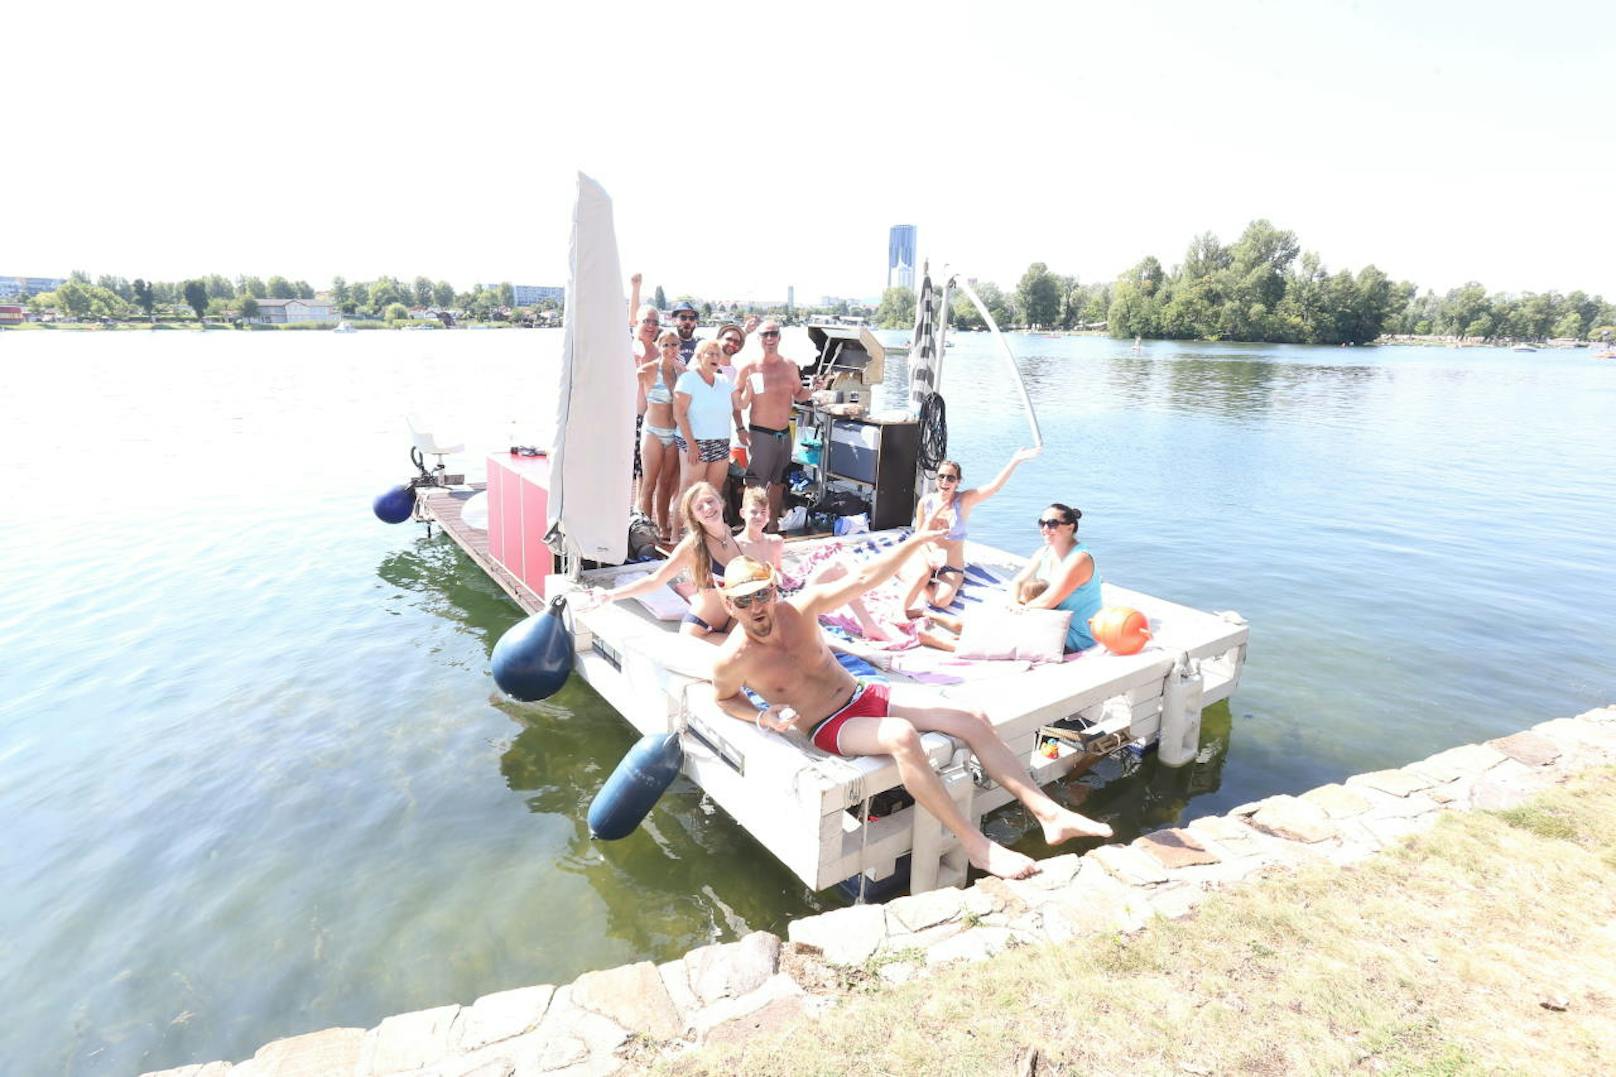 Ein Selbstbau-Floß samt DJ-Pult bringt Partystimmung auf die Alte Donau. Gemietet werden kann das Wassergefährt nicht, mitfahren geht aber dafür kostenlos.